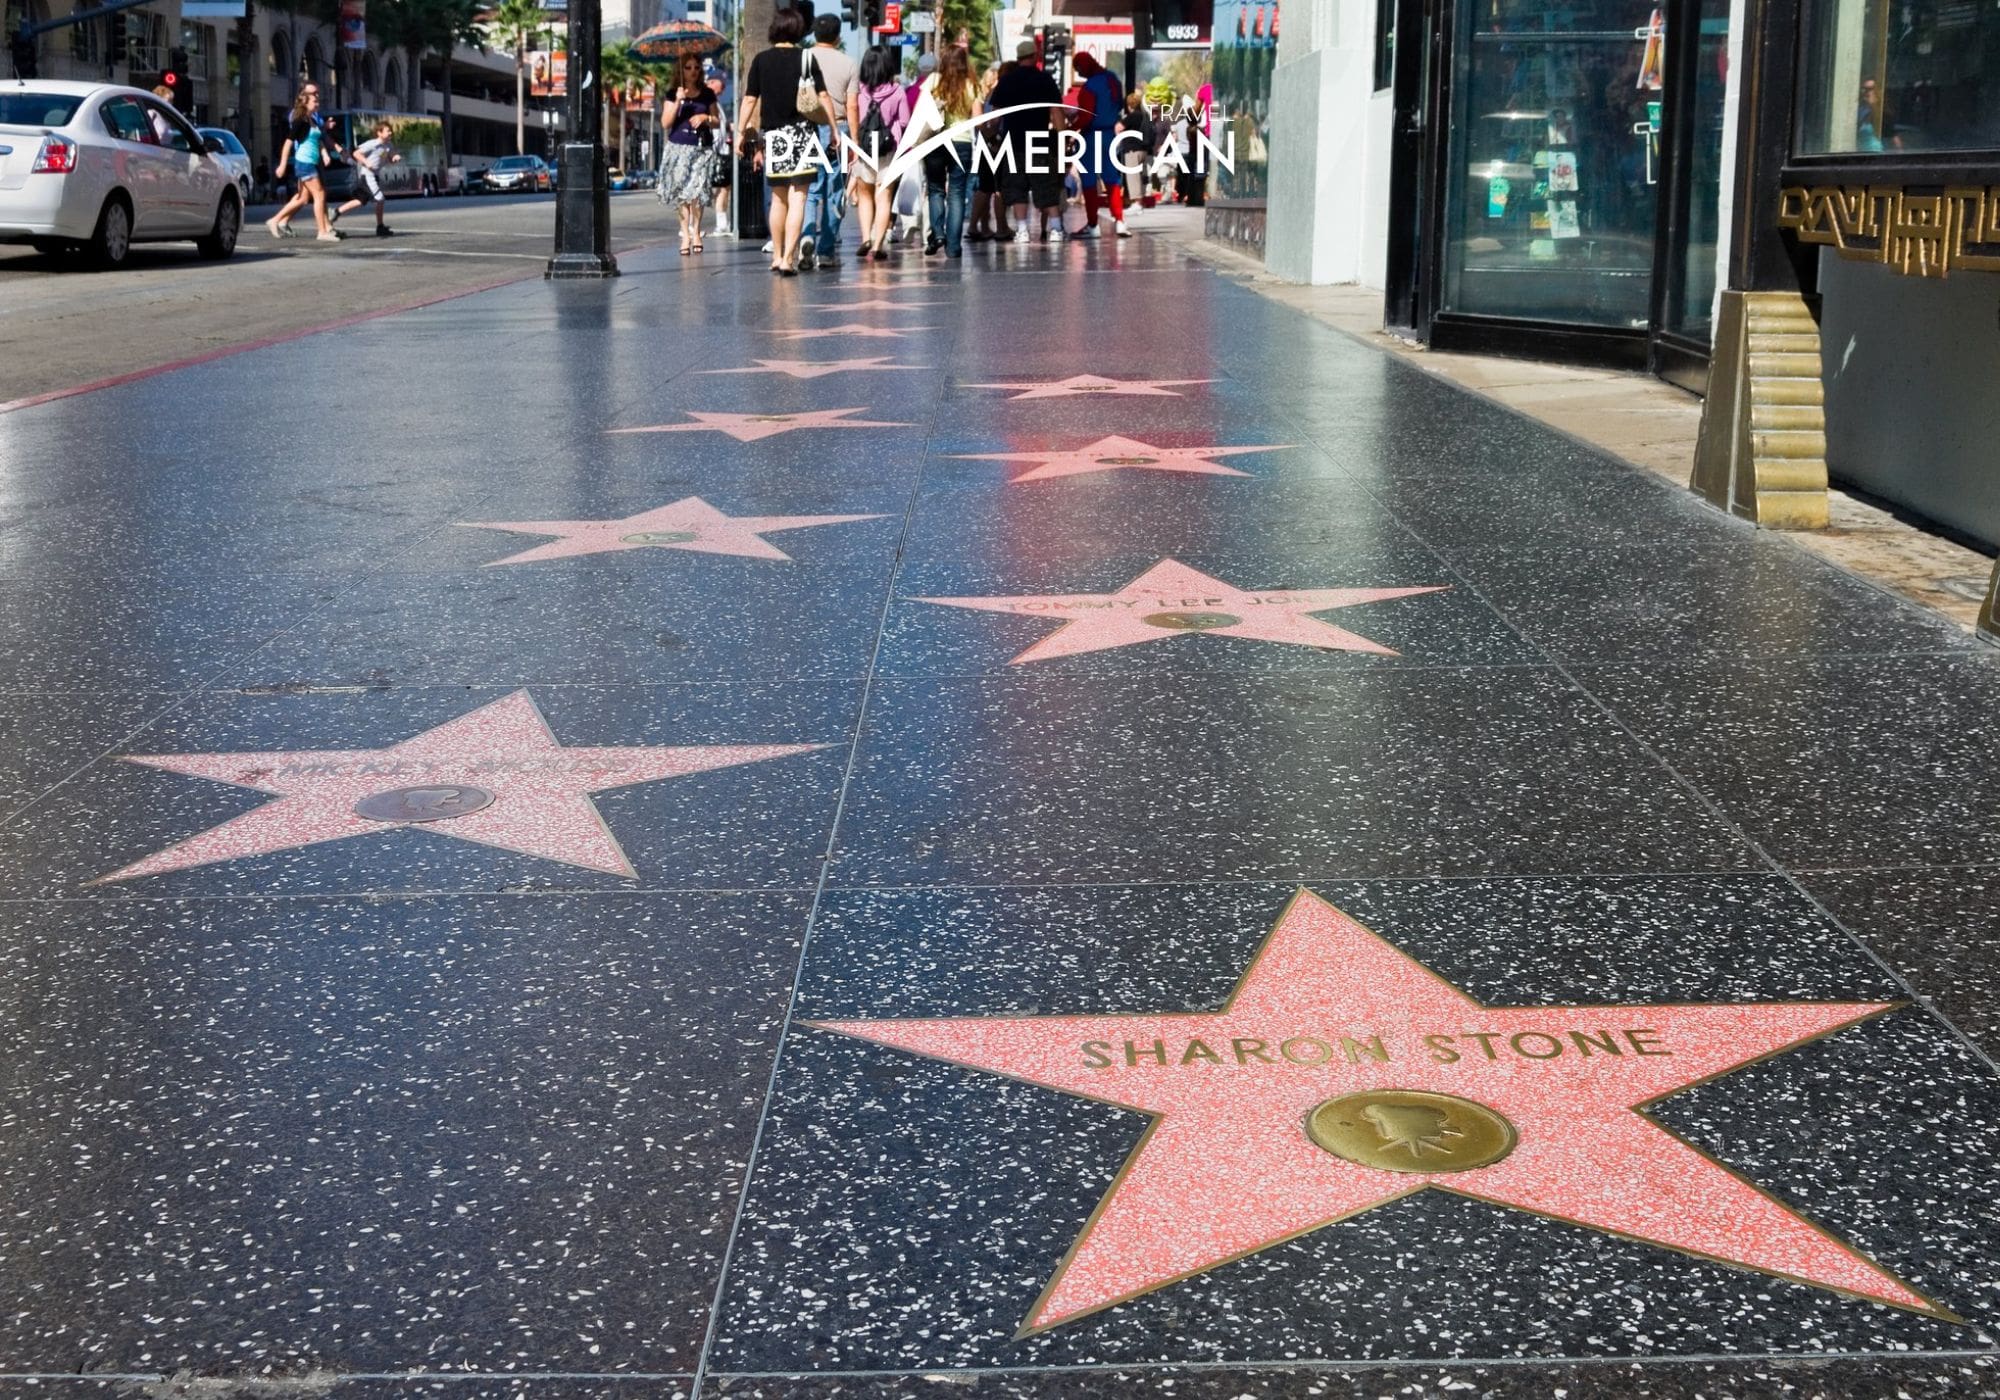 Đại lộ danh vọng, nơi vinh danh những nghệ sĩ, diễn viên có đóng góp to lớn trong nền điện ảnh và giải trí nước Mỹ.